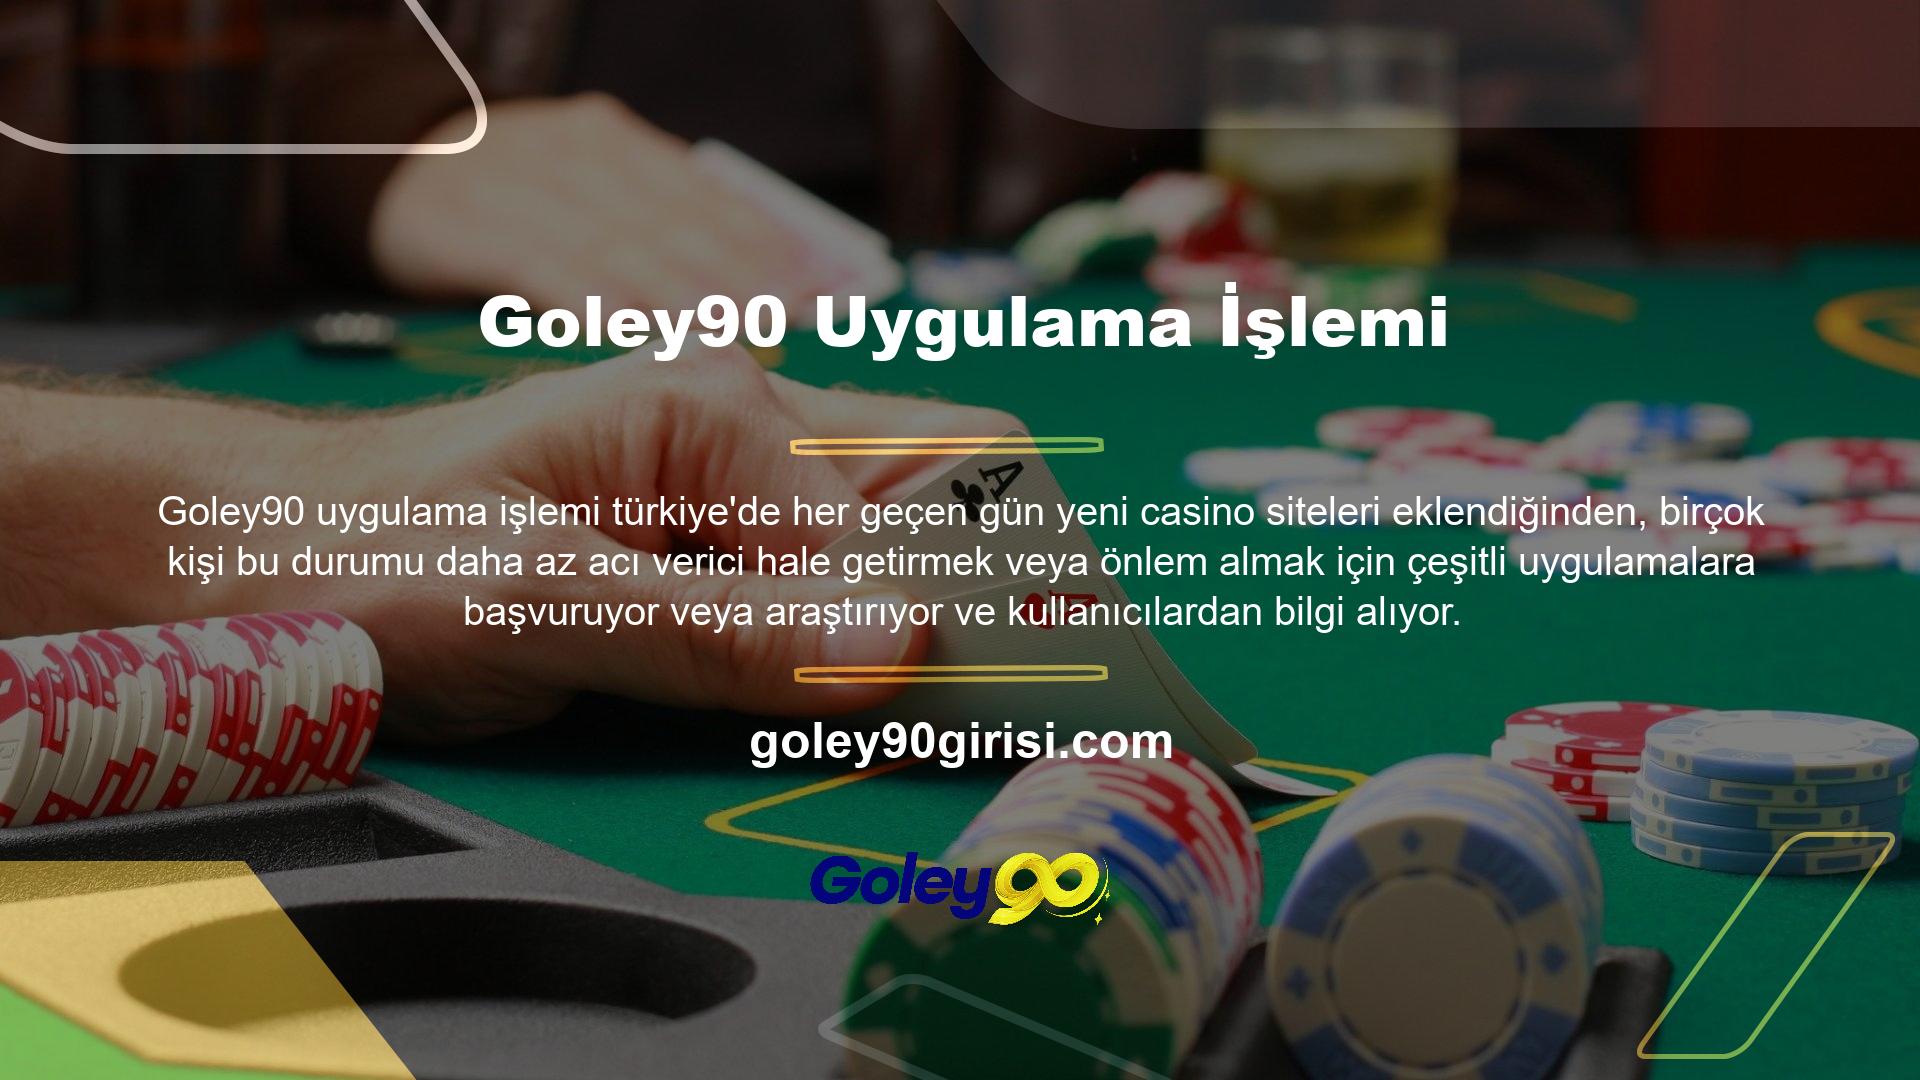 Goley90 var olduğuna yaygın olarak inanılıyor ve casino sitelerinden biri olması nedeniyle merakla takip ediliyor